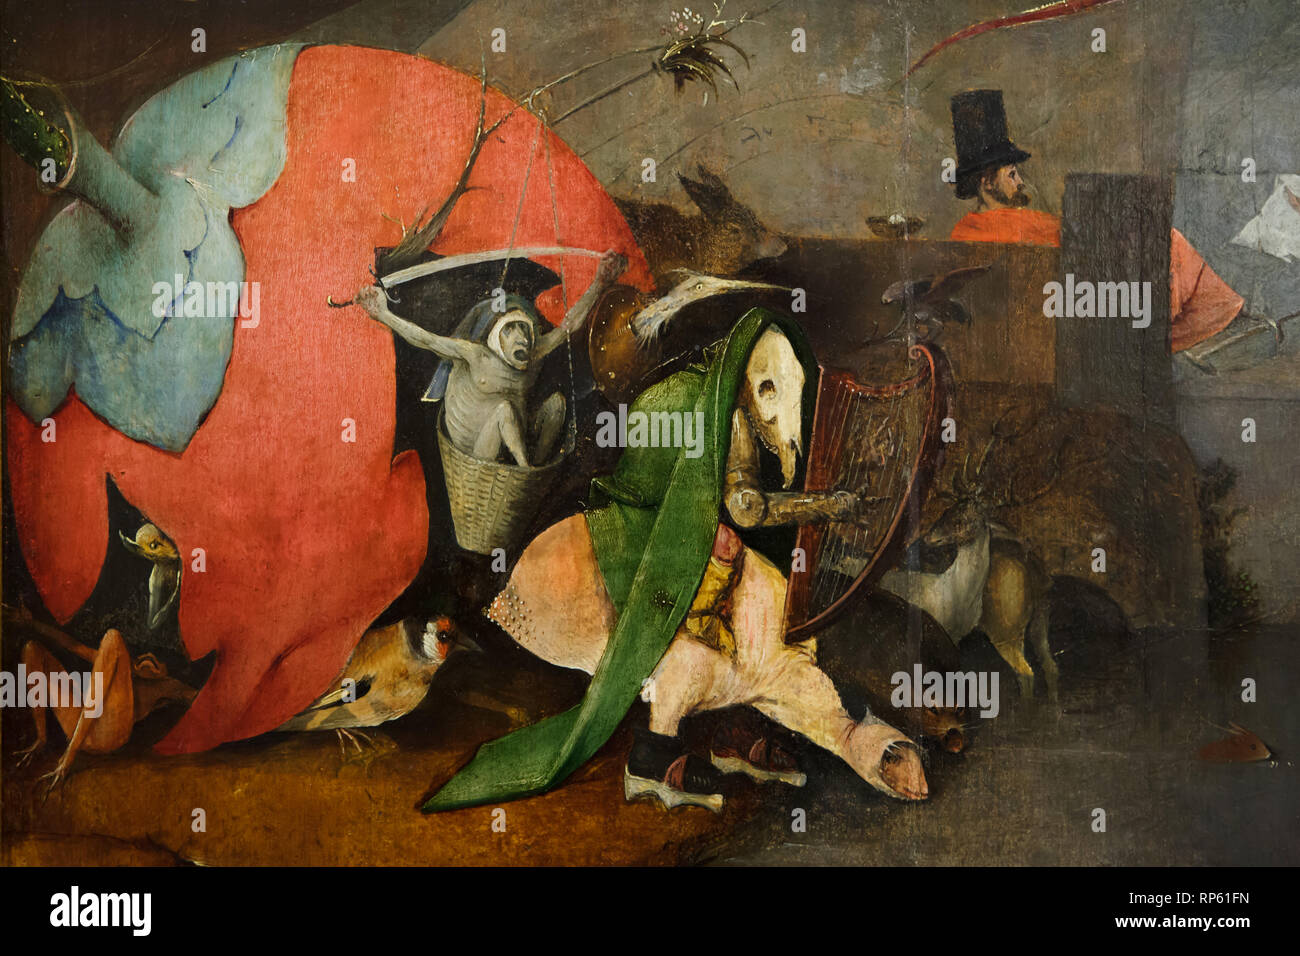 Dettaglio dell'altare trittico "Tentazione di Sant Antonio' olandese da pittore rinascimentale Hieronymus Bosch (1490-1500) in mostra al Museo Nazionale di Arte Antica (Museu Nacional de Arte Antiga) a Lisbona, Portogallo. Foto Stock